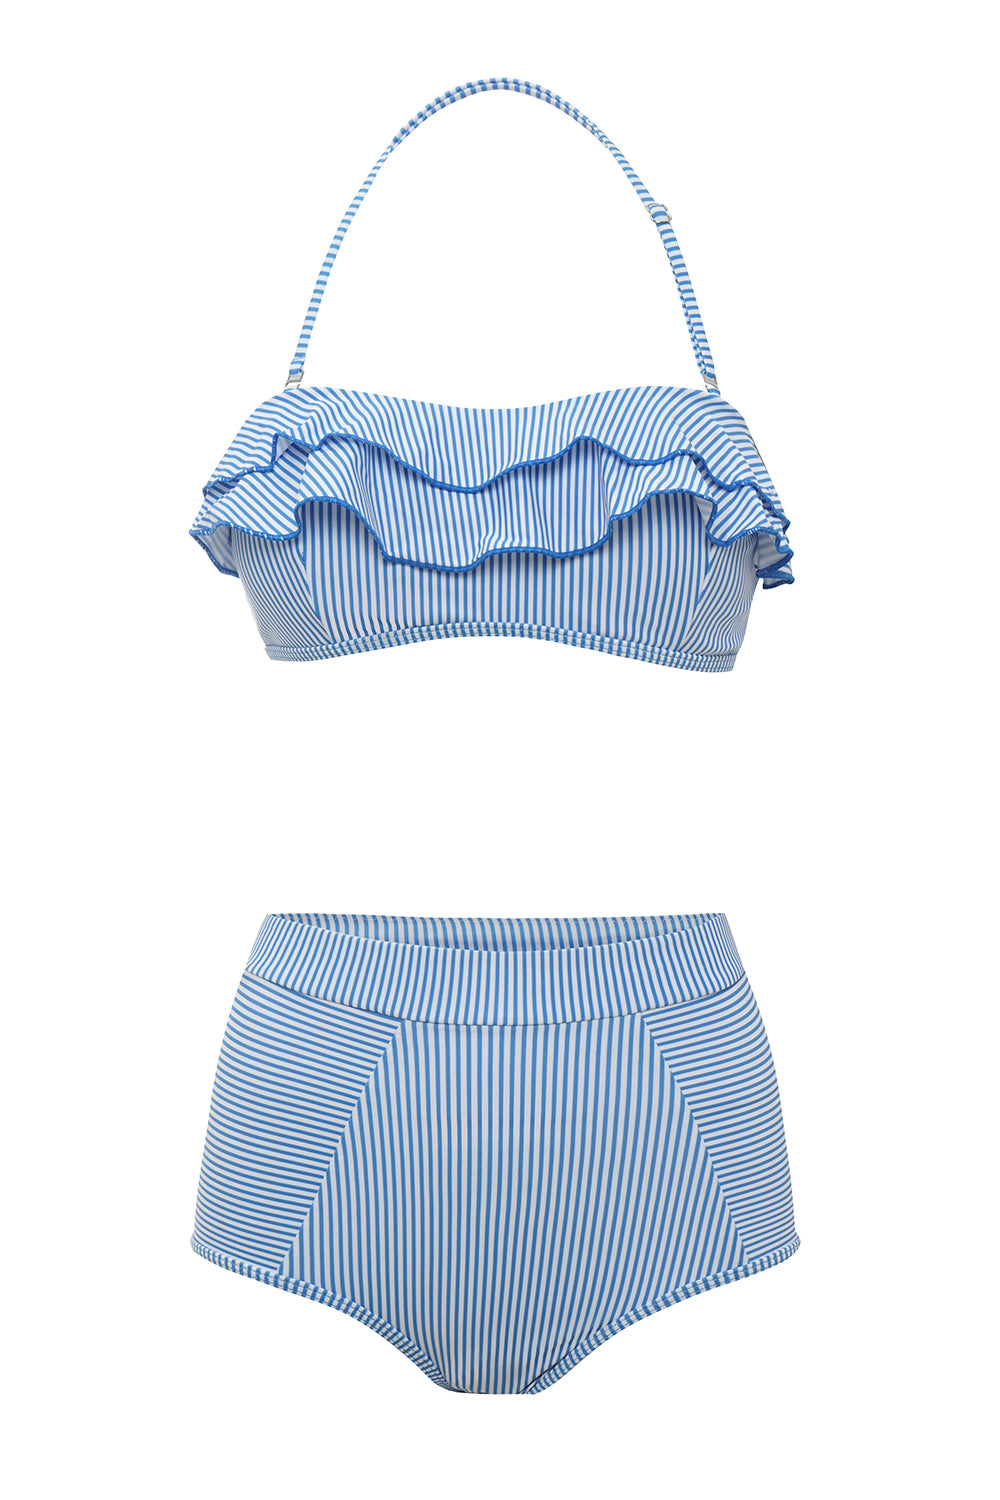 Zapaka Women Swimwear Blue Stripes Two Pieces Bikini – ZAPAKA